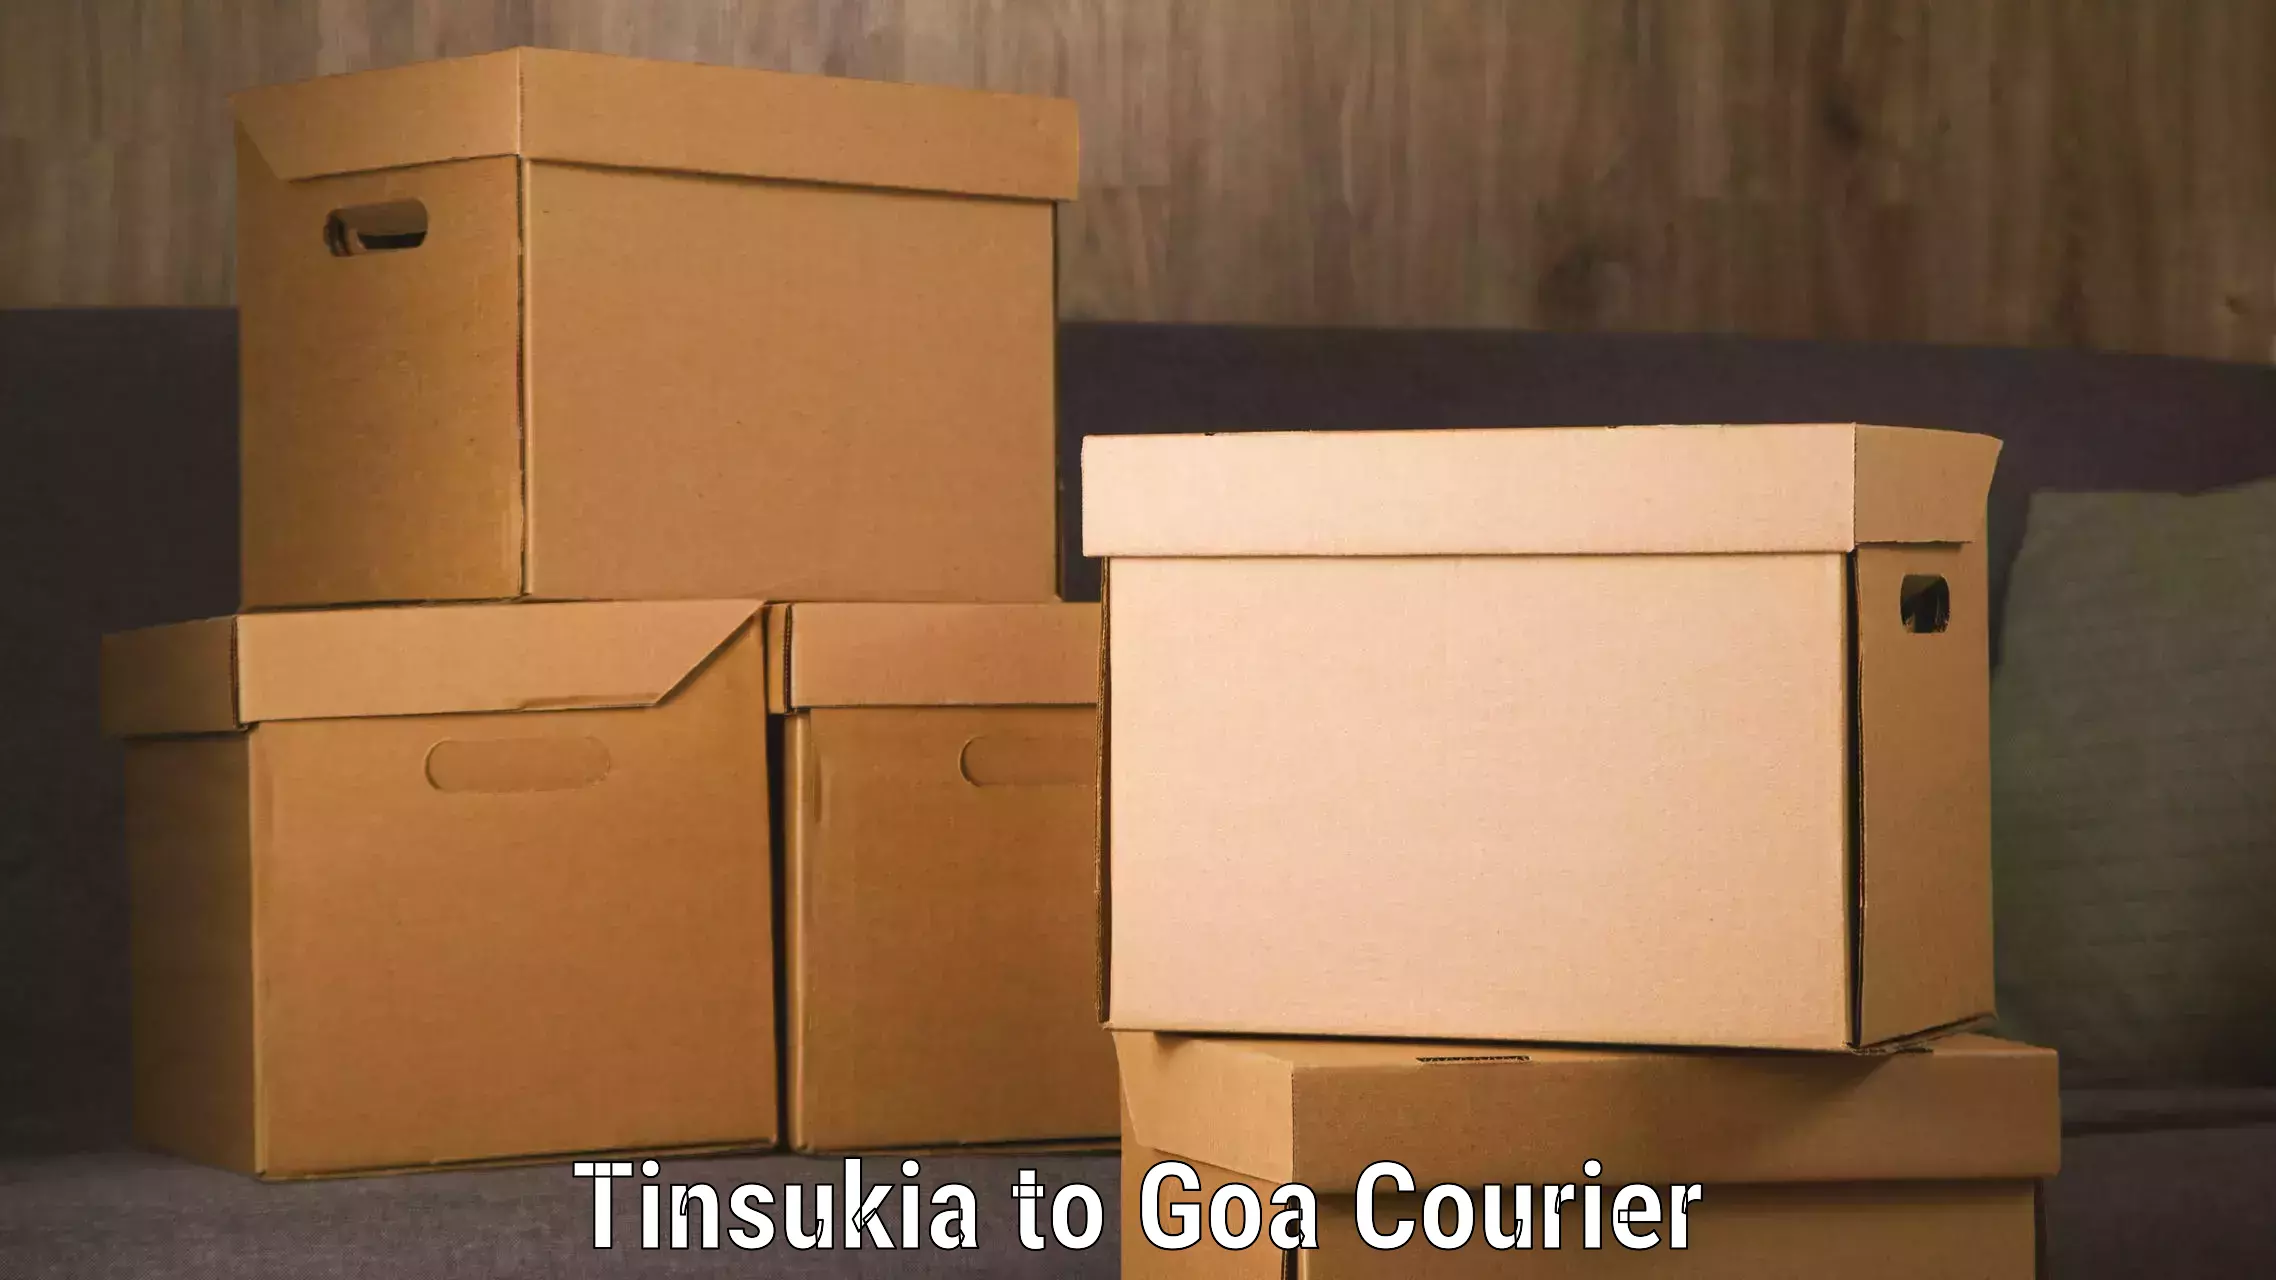 Luggage transfer service Tinsukia to Goa